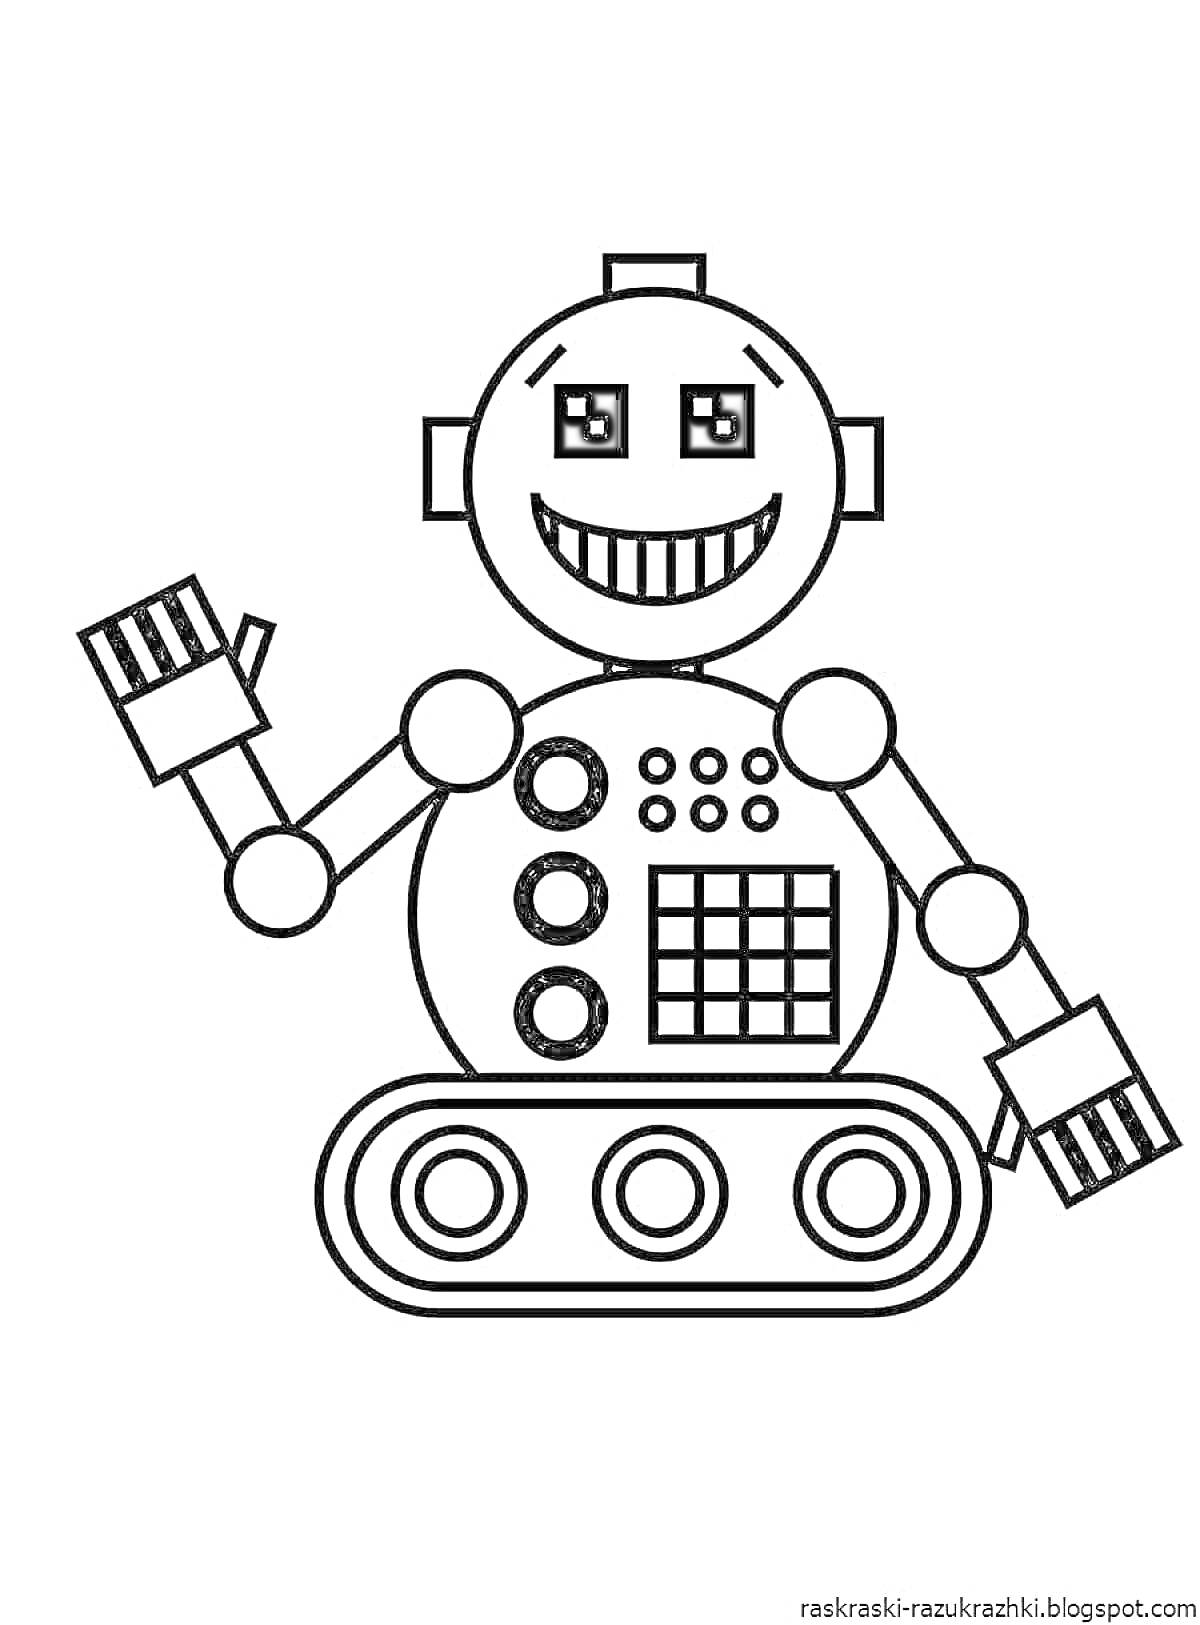 Раскраска Робот с круглой головой, квадратными ушами, большой улыбкой, правой поднятой рукой с пятью пальцами, кнопками на туловище и гусеницами вместо ног